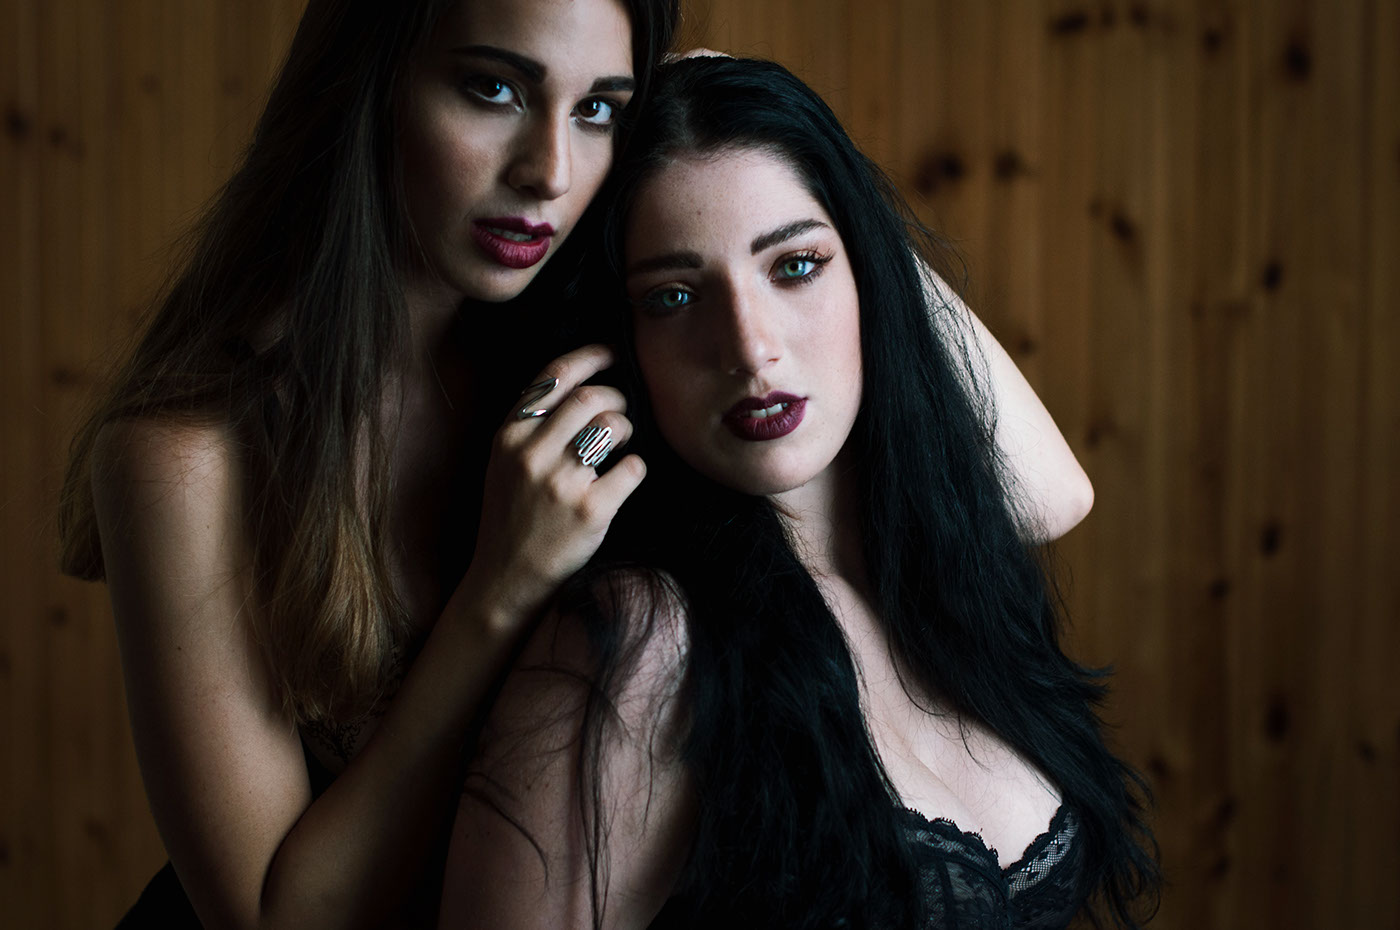 Portraiture lingerie models women sofia hassan portrait Italy